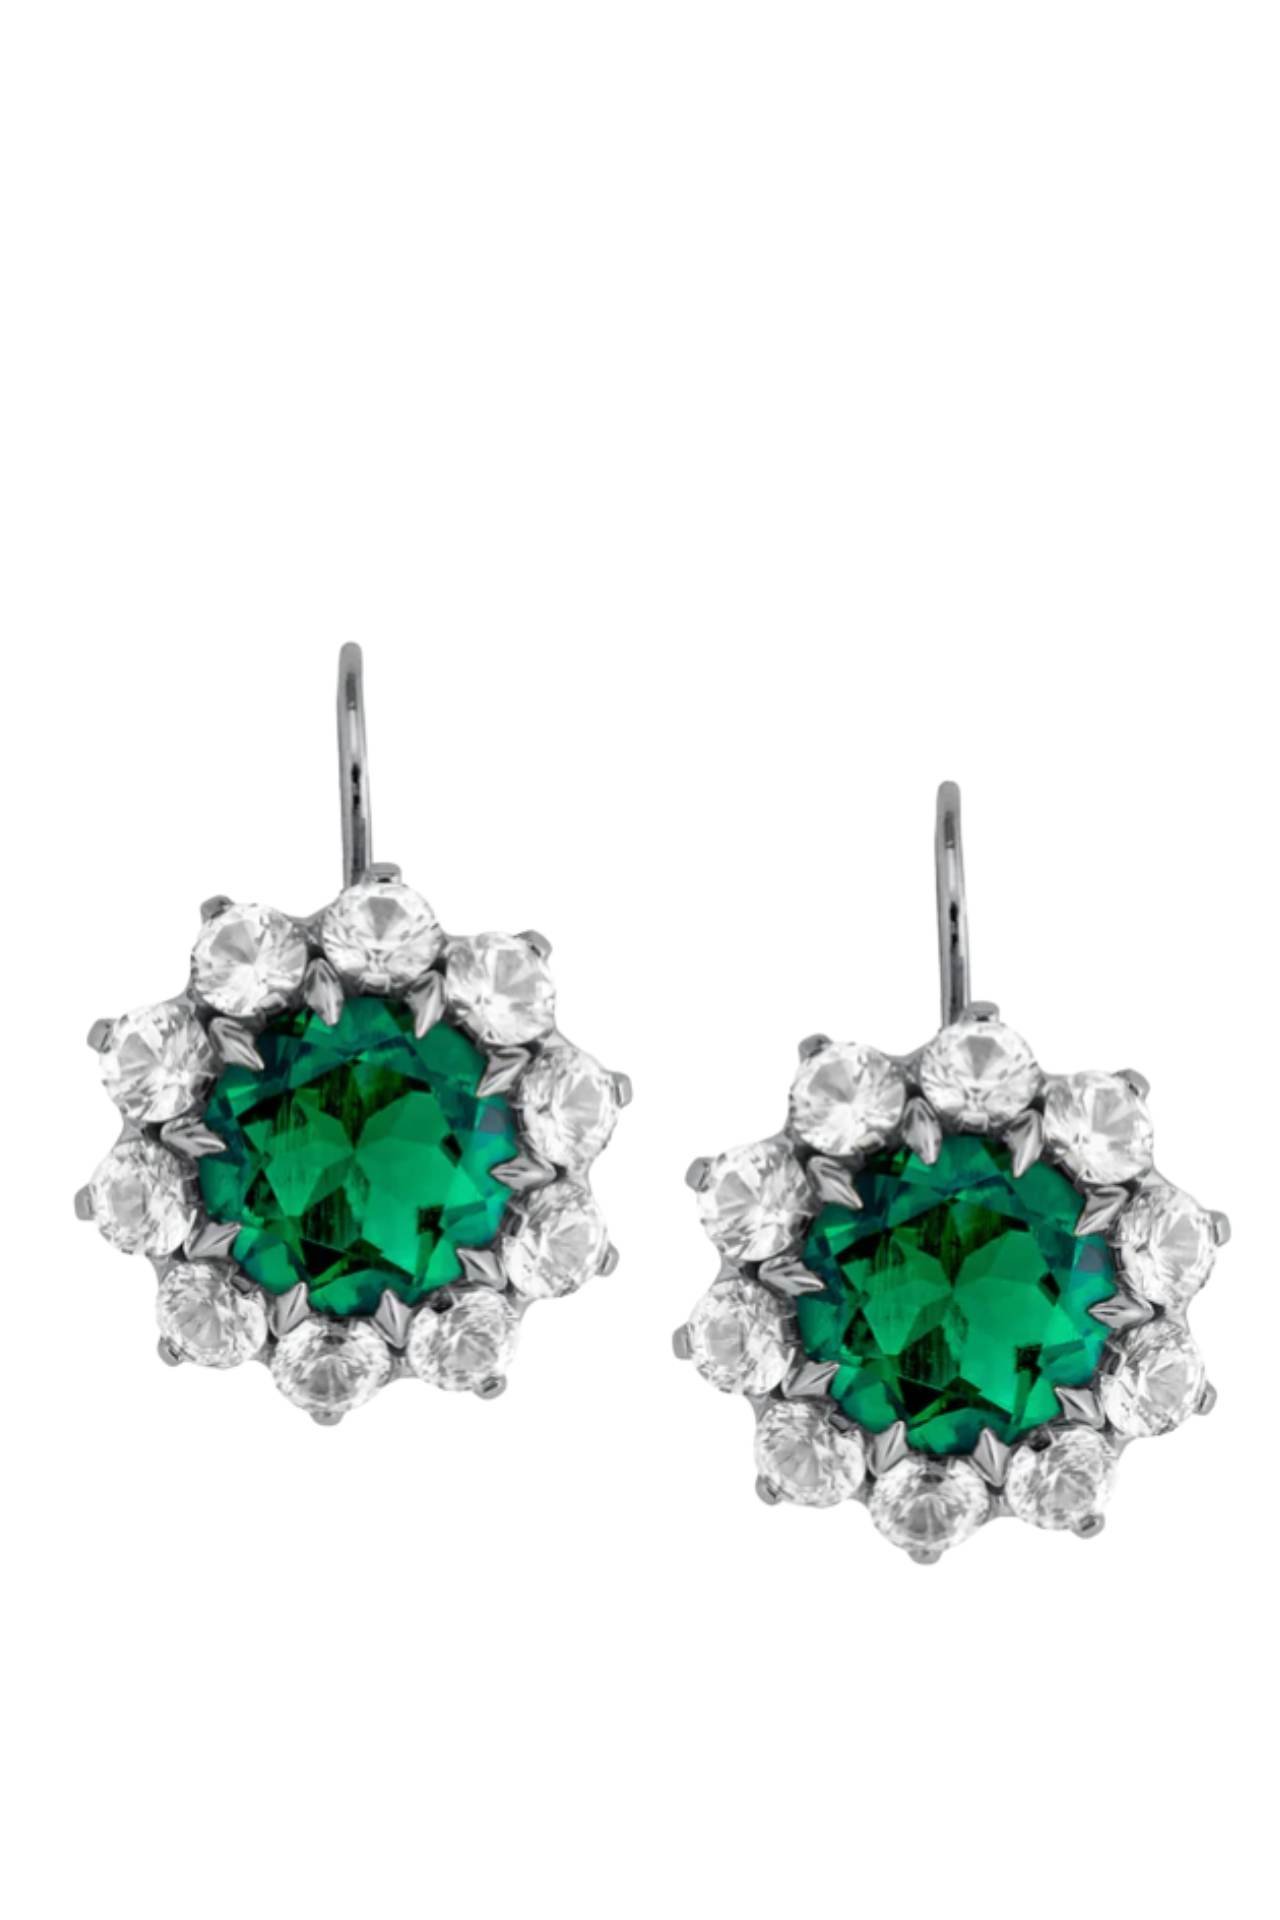 dorsey gwen emerald earrings